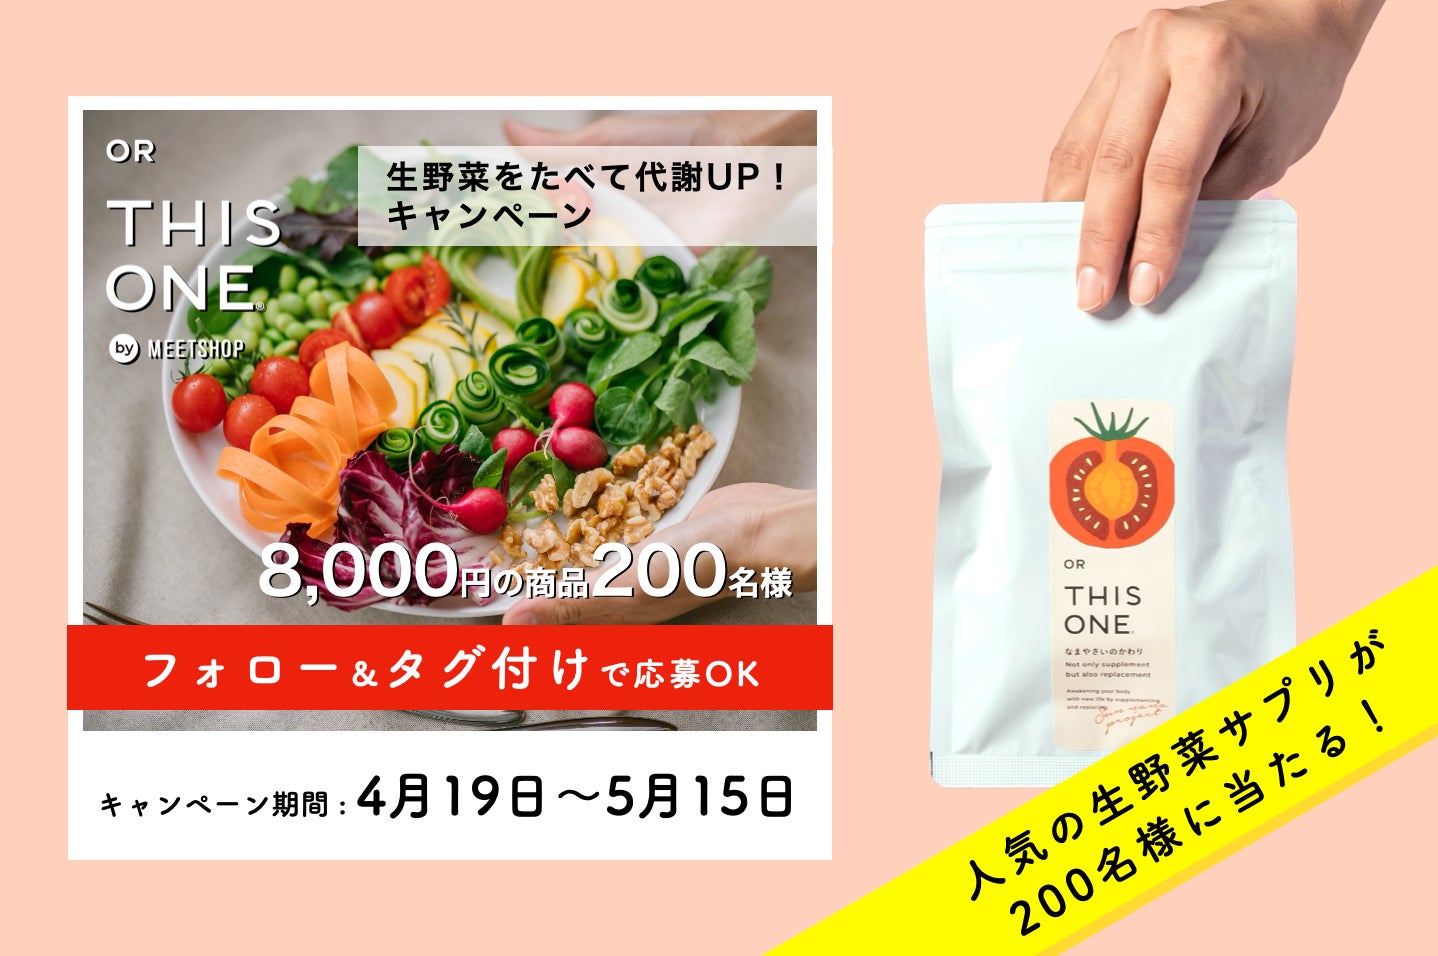 【合計200名に大プレゼント】「#なまやさい代謝」キャンペーンが4月19日(金)スタート　生野菜の食べ方をインスタグラム投稿すると8,000円相当の更年期サプリなどがもらえる